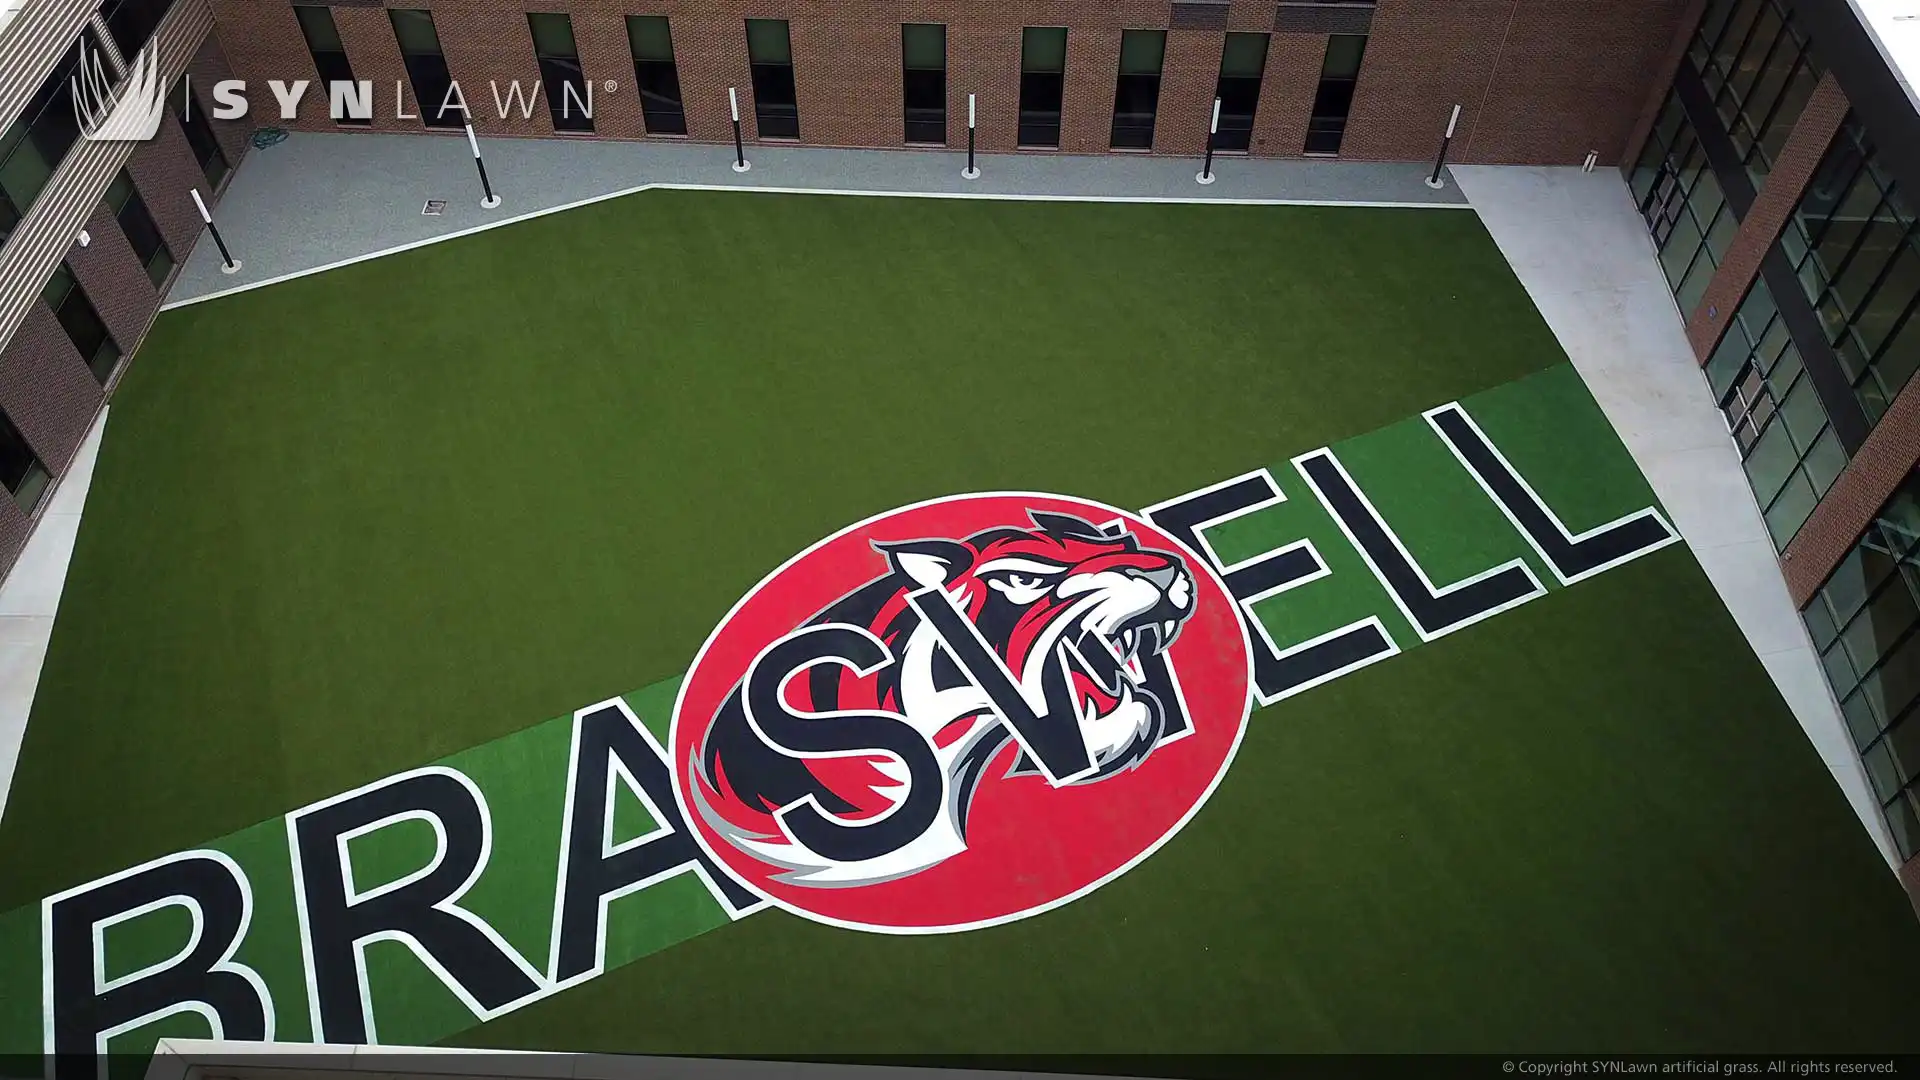 Texas High School eleva imagem com logotipos de grama embutidos e áreas de recreação multiuso